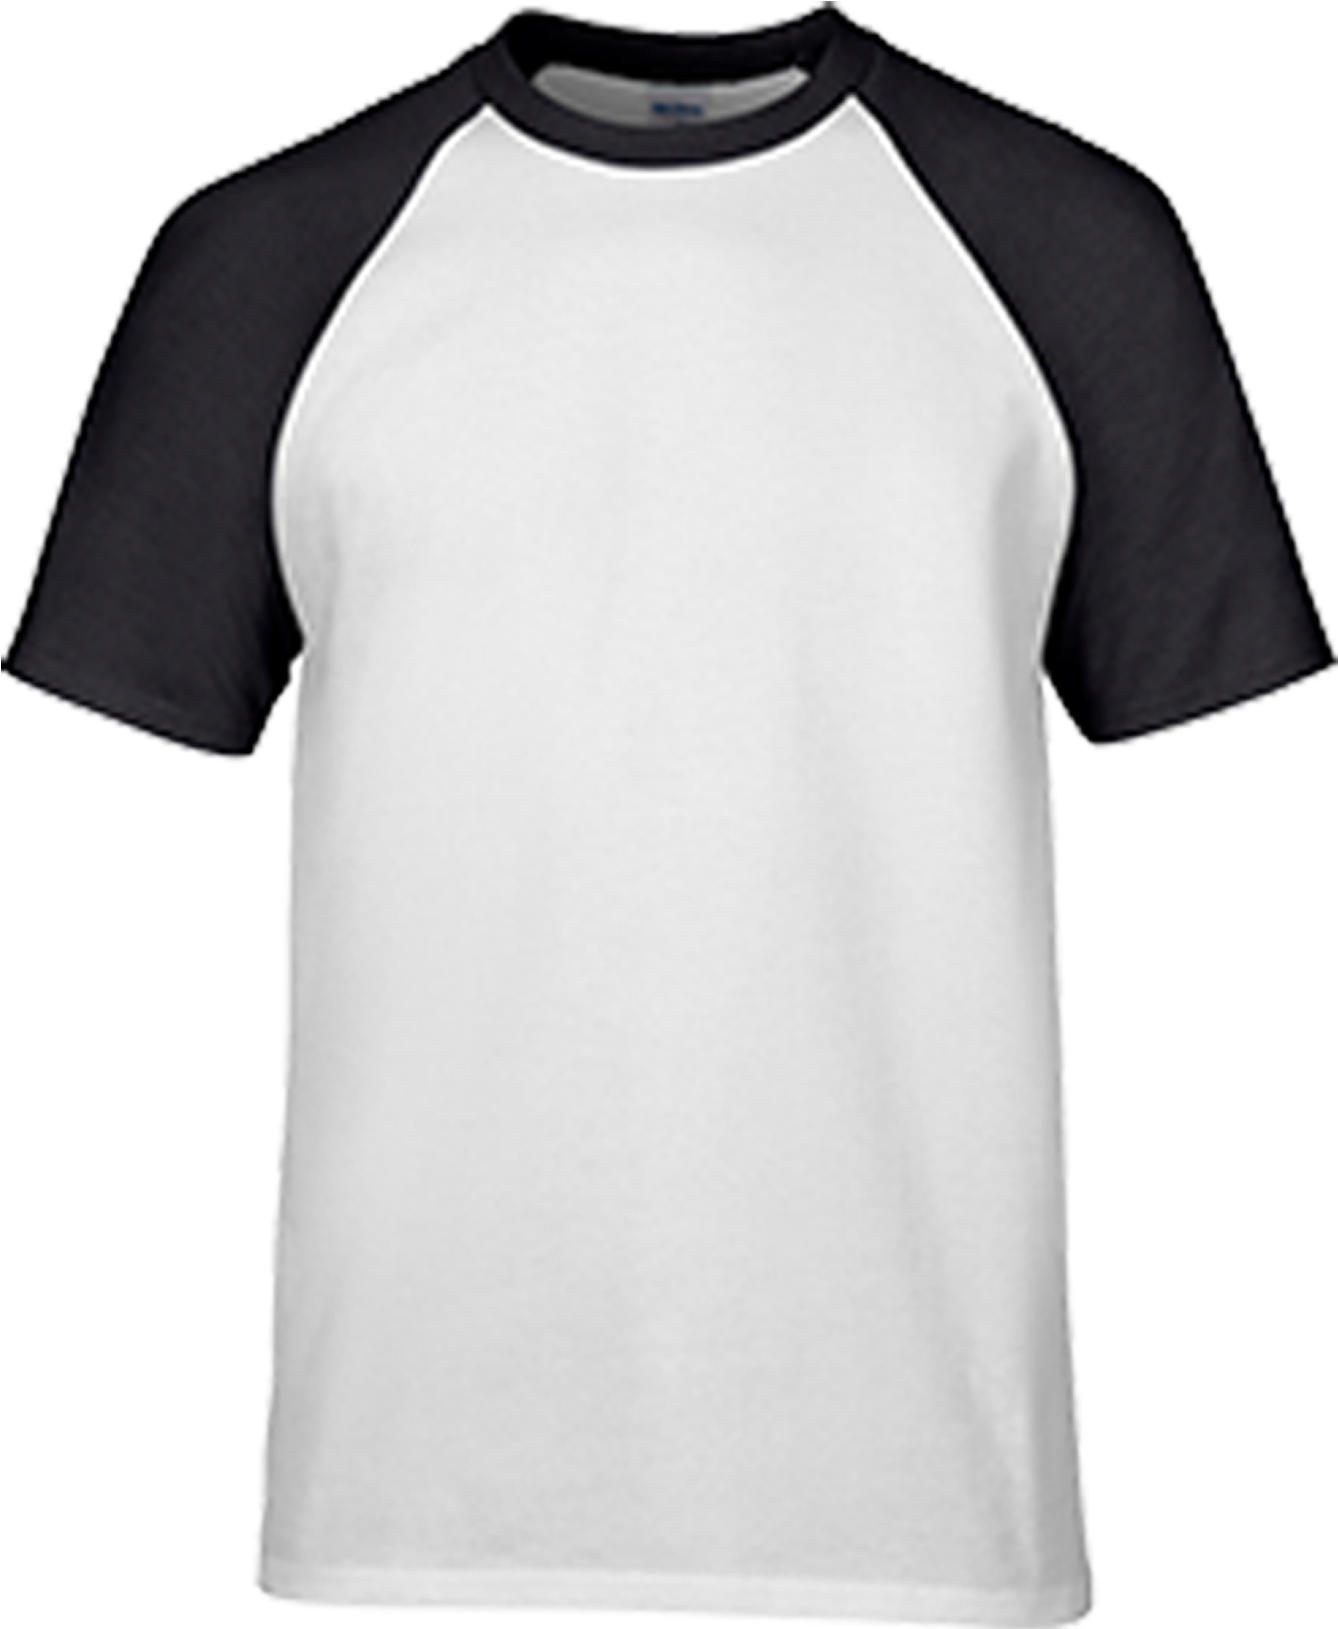 Blackand White Raglan T Shirt PNG image